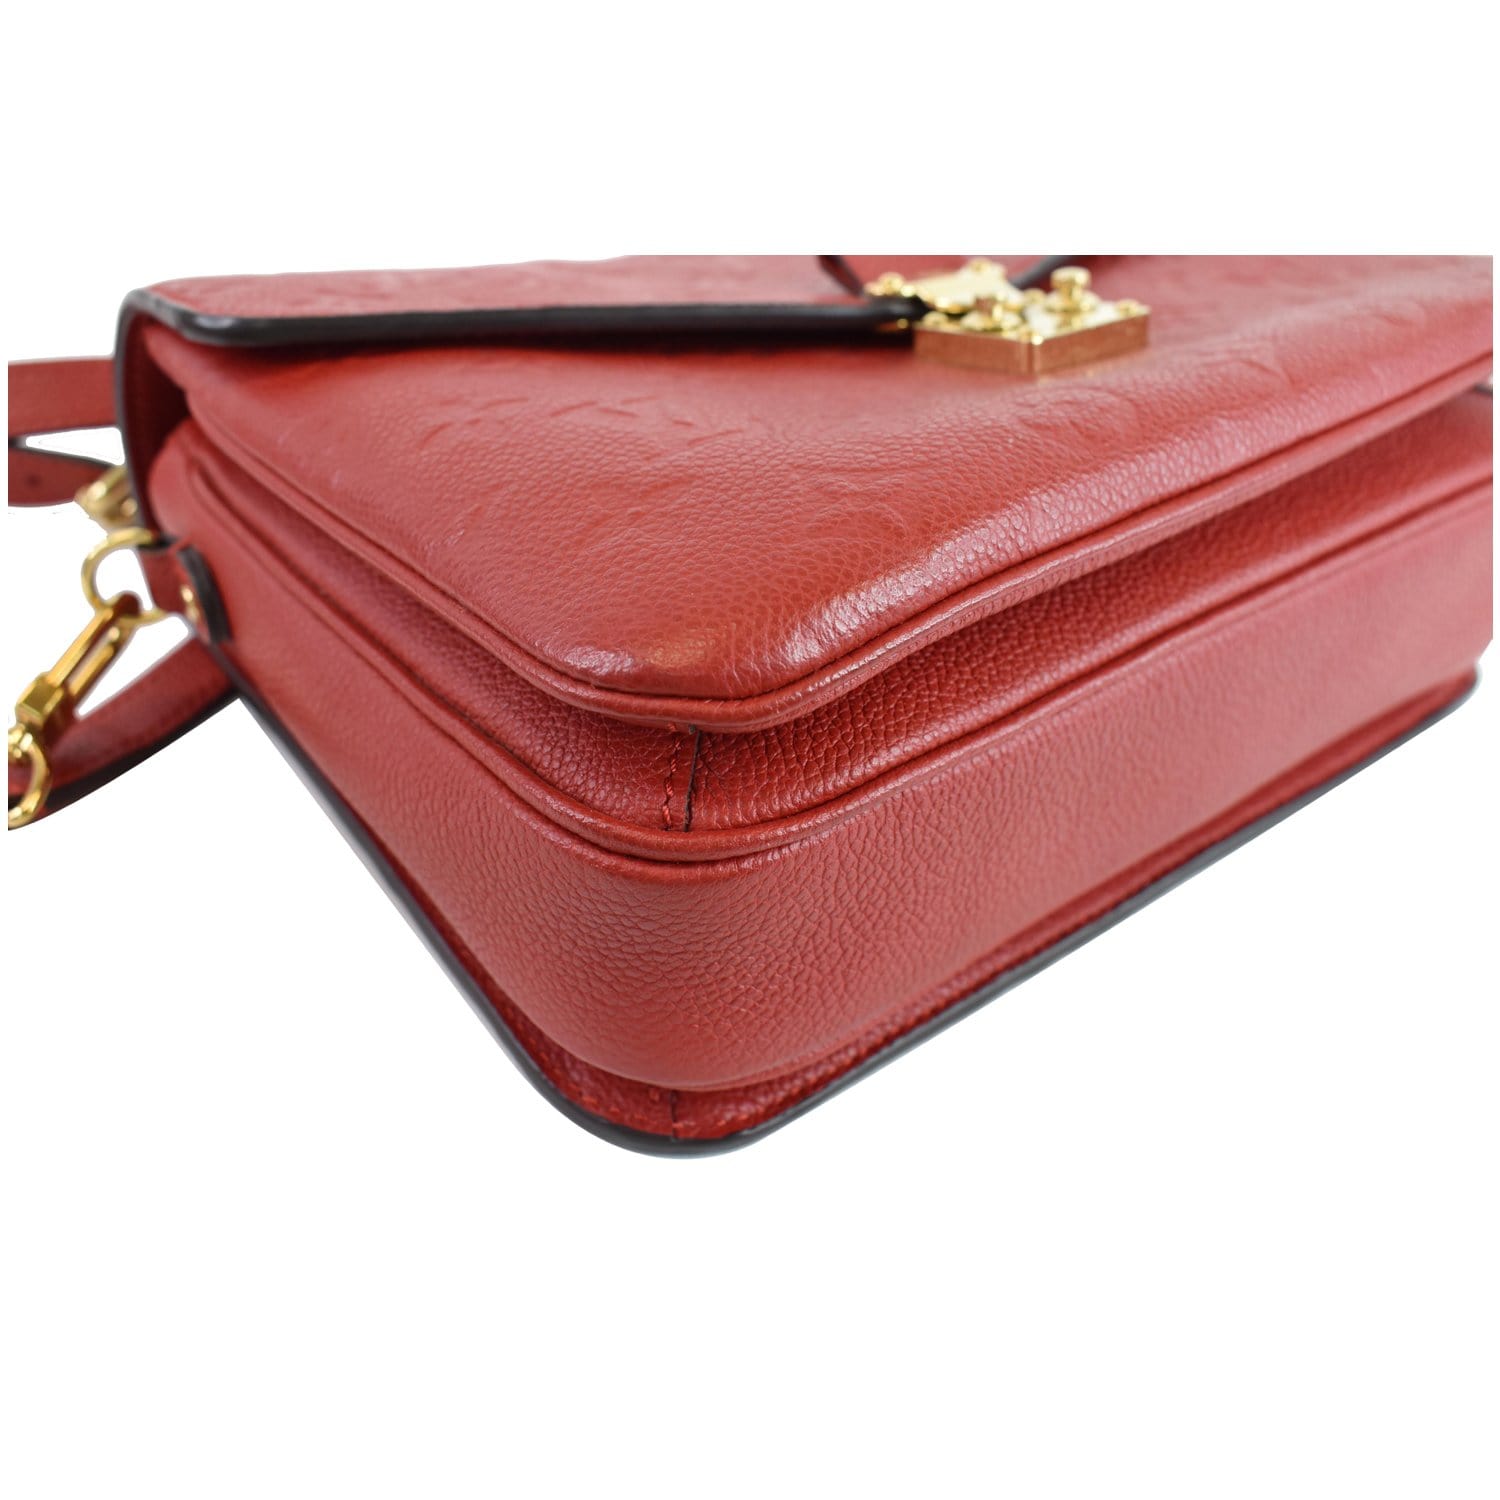 Louis Vuitton Pochette Metis in Empreinte Cherry Red, Monogram GM Agenda,  Round coin purse, and iPh…